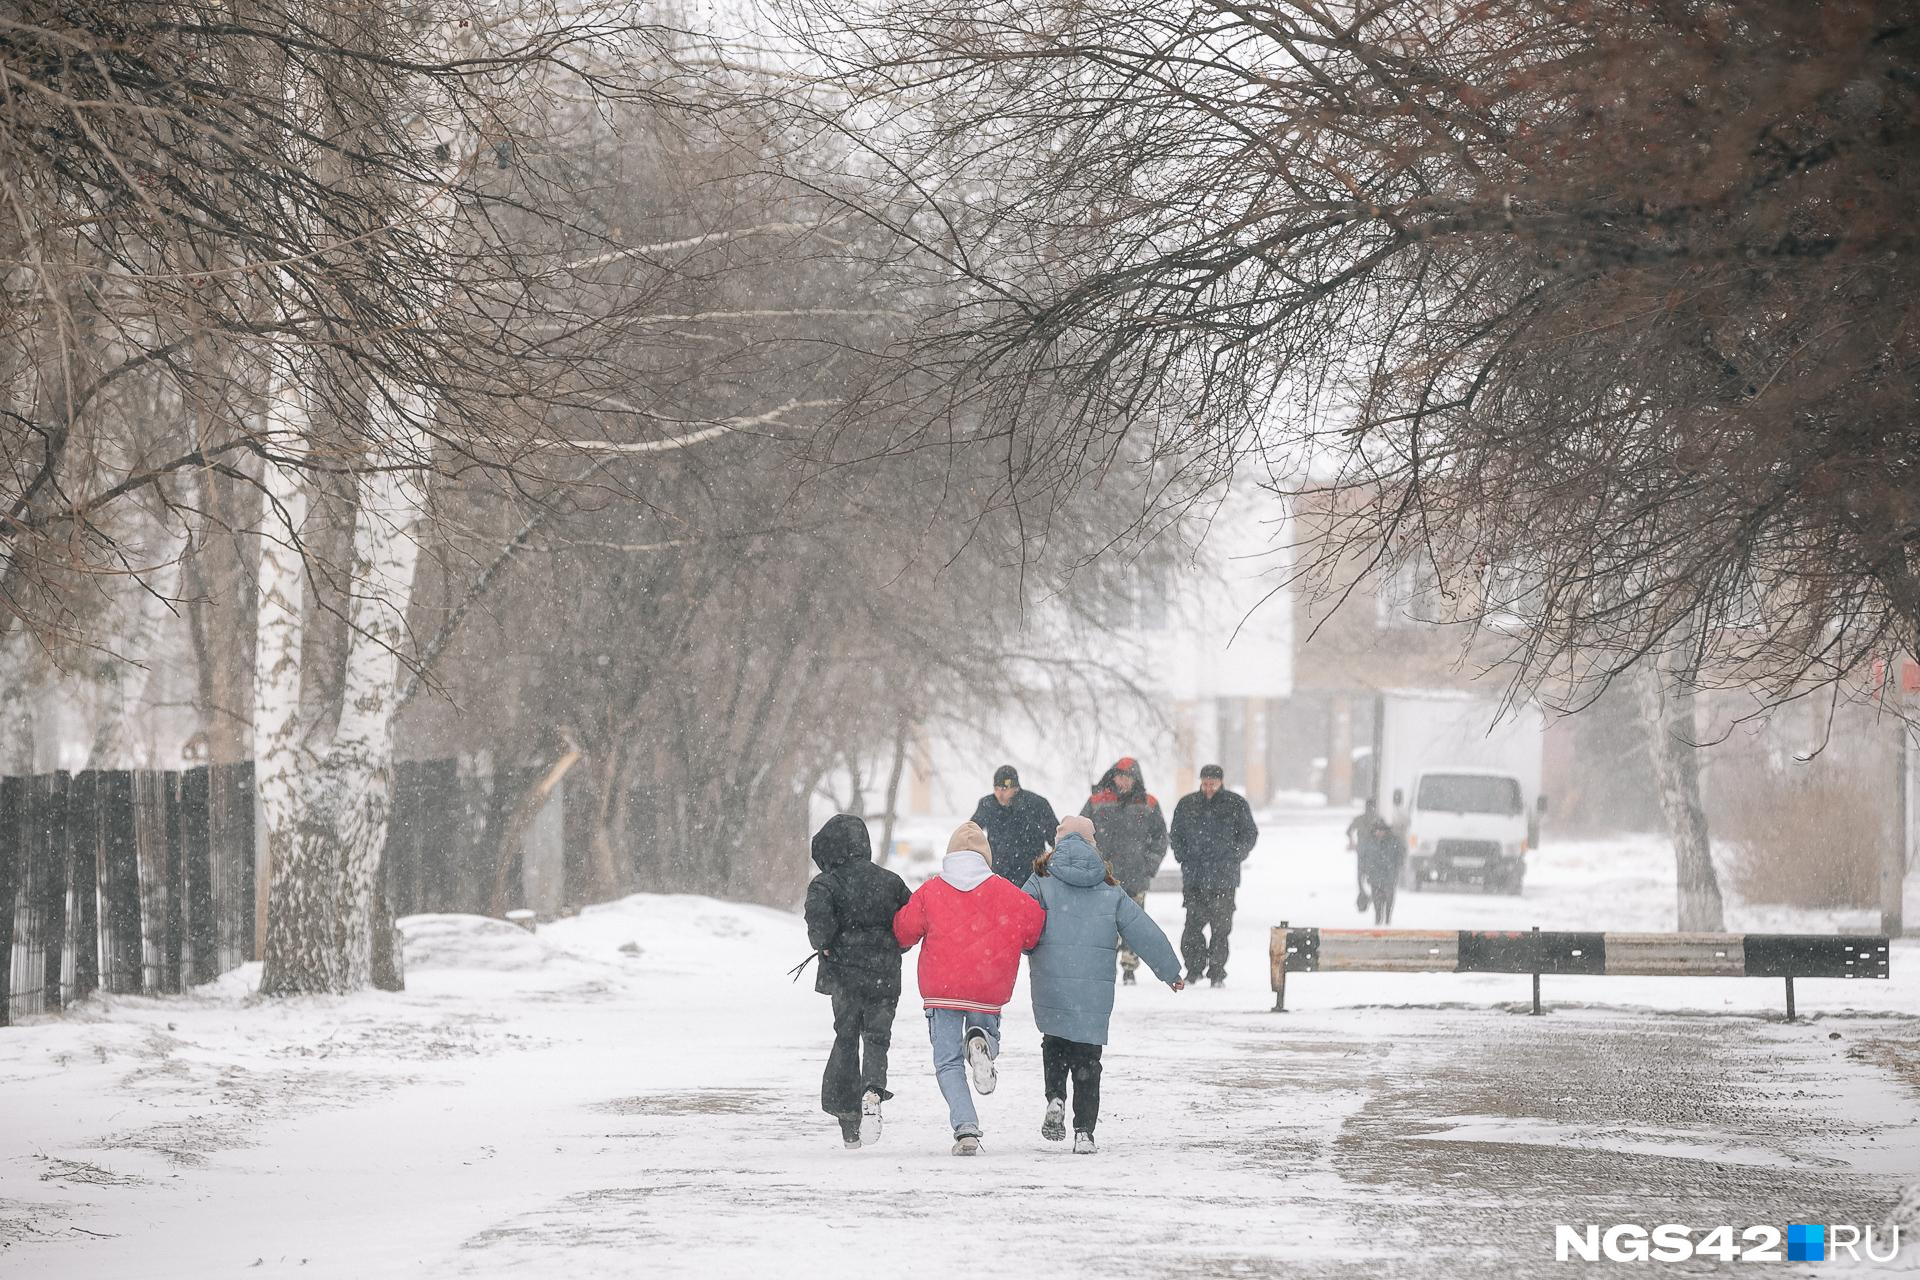 Дойдет ли до Кузбасса циклон «Ольга», который несет в Москву рекордные снегопады — узнали у синоптиков